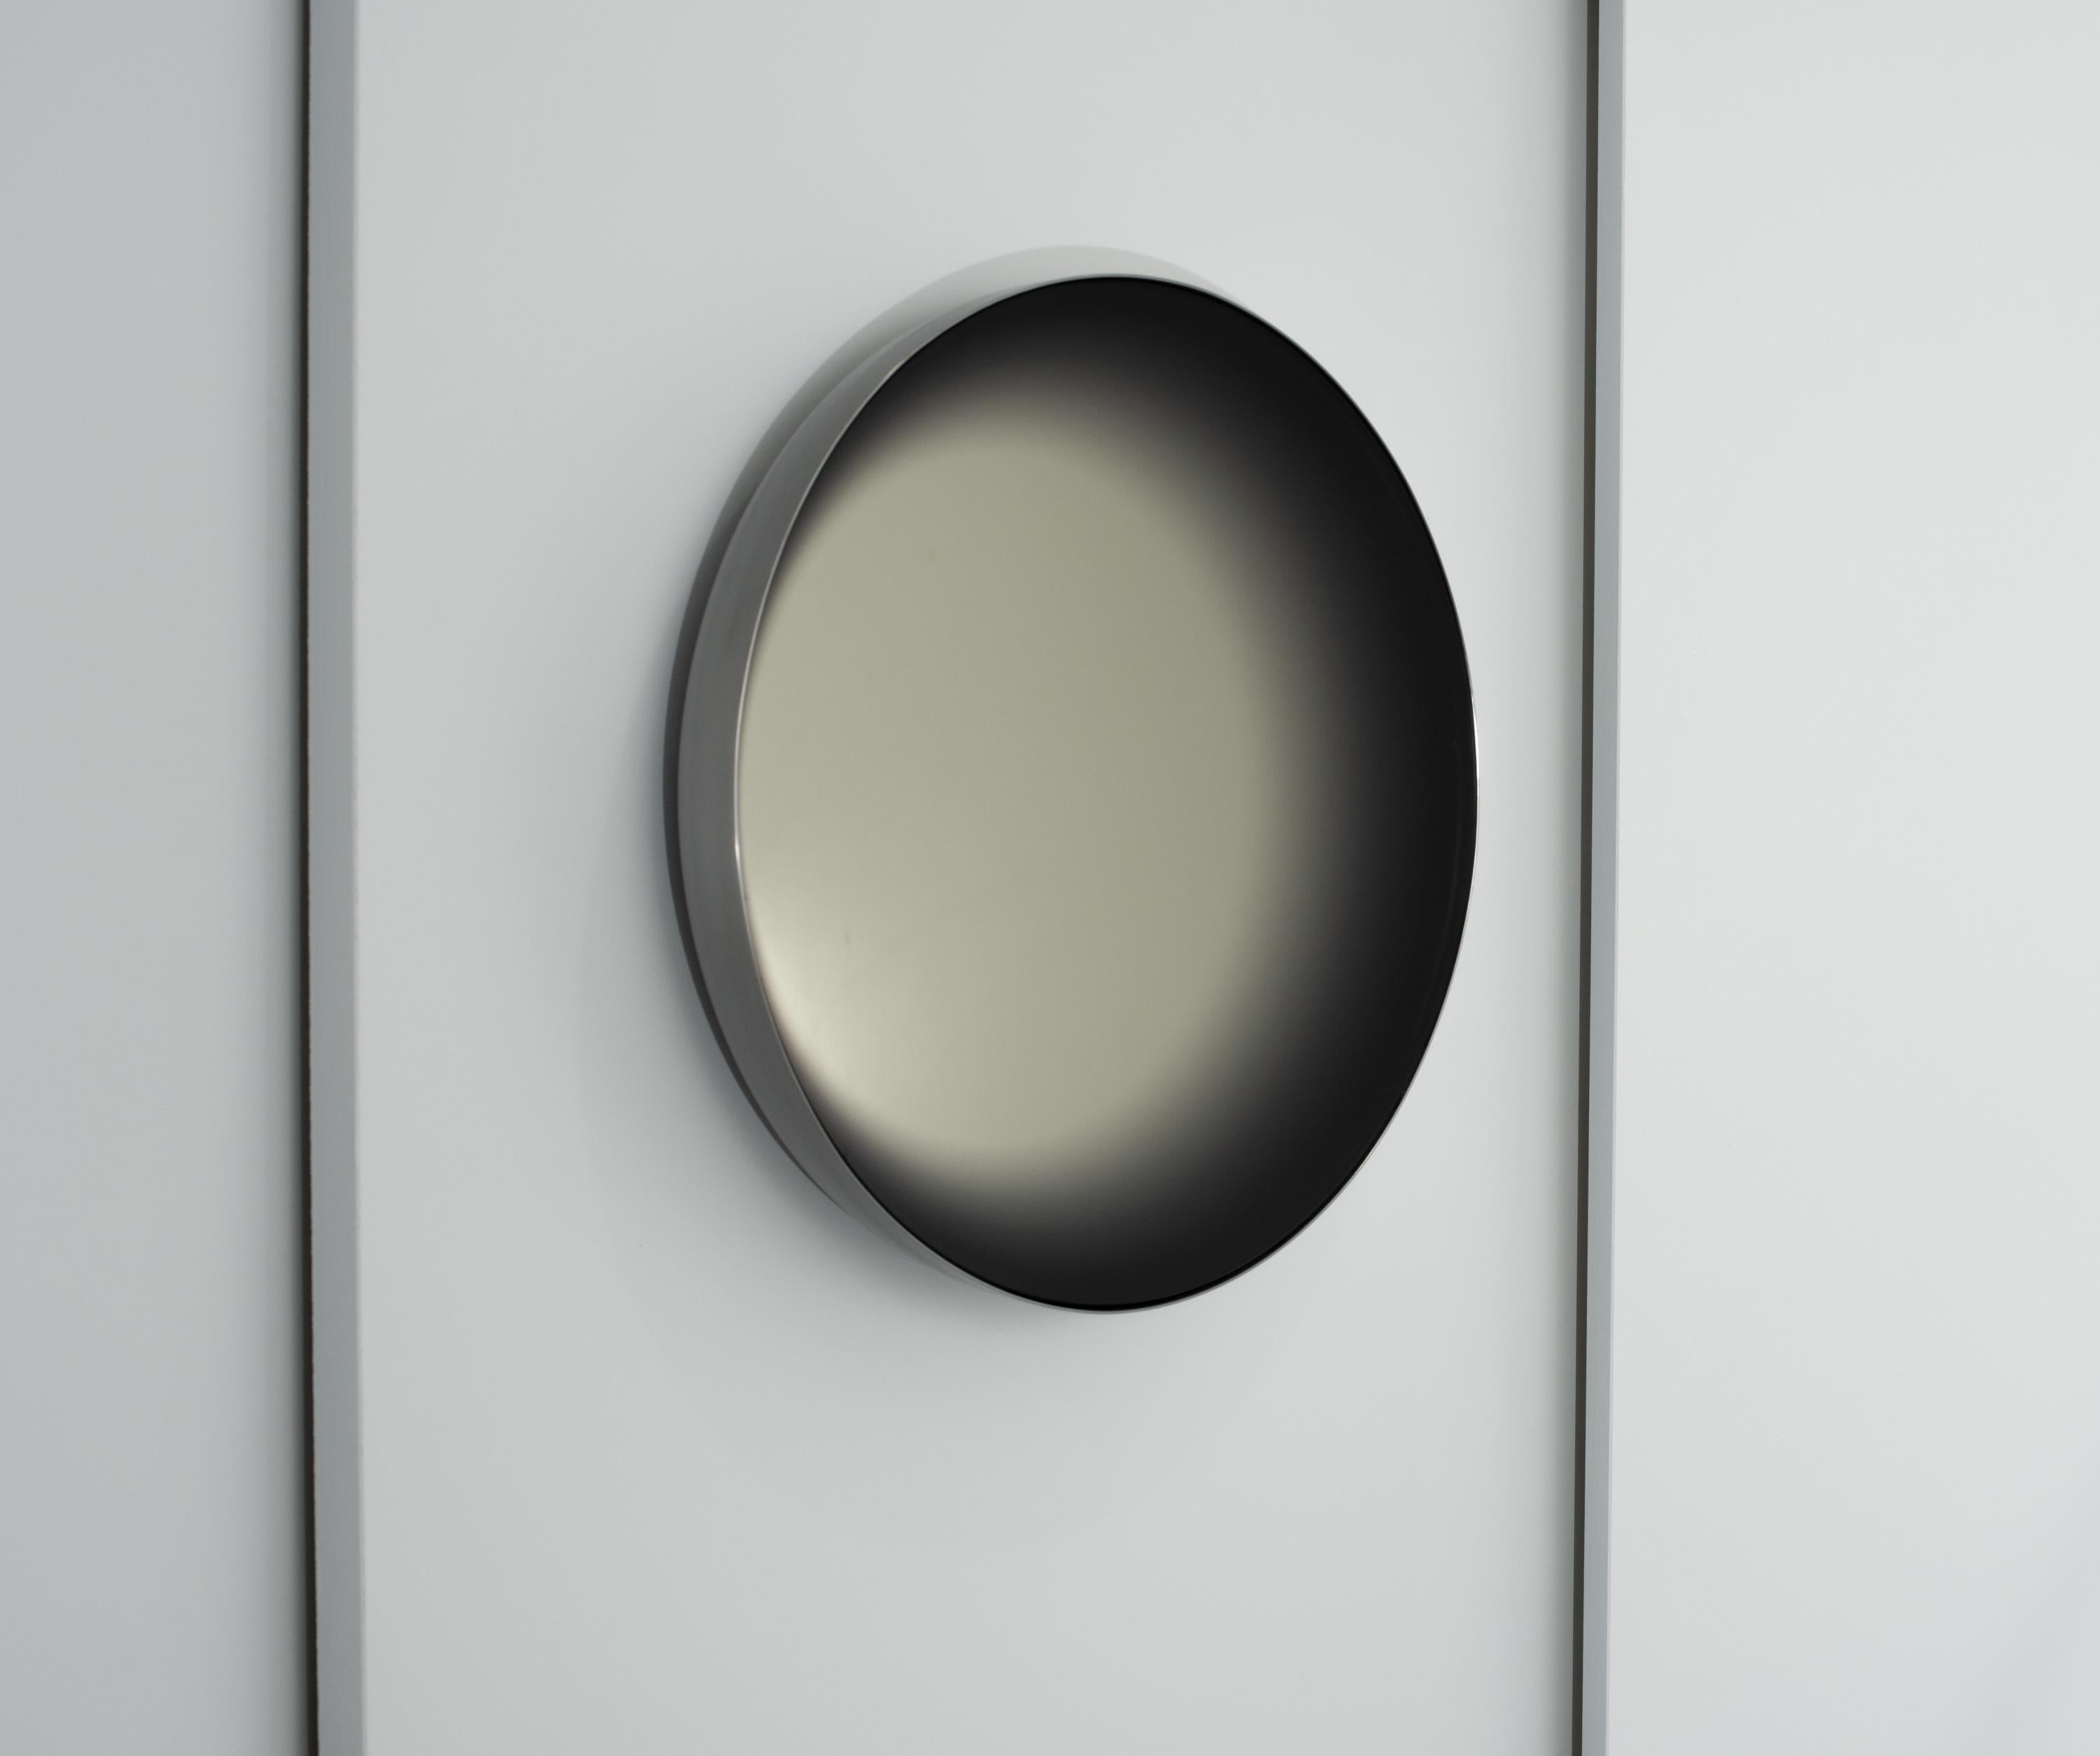 Concave convex mirror ist ein Stück in offener Auflage, das für die Ausstellung Alt Material im Rahmen der NGV (National Gallery of Victoria) Melbourne Design Week 2020 geschaffen wurde. Die Aufgabe bestand darin, einen Gebrauchsgegenstand zum Thema